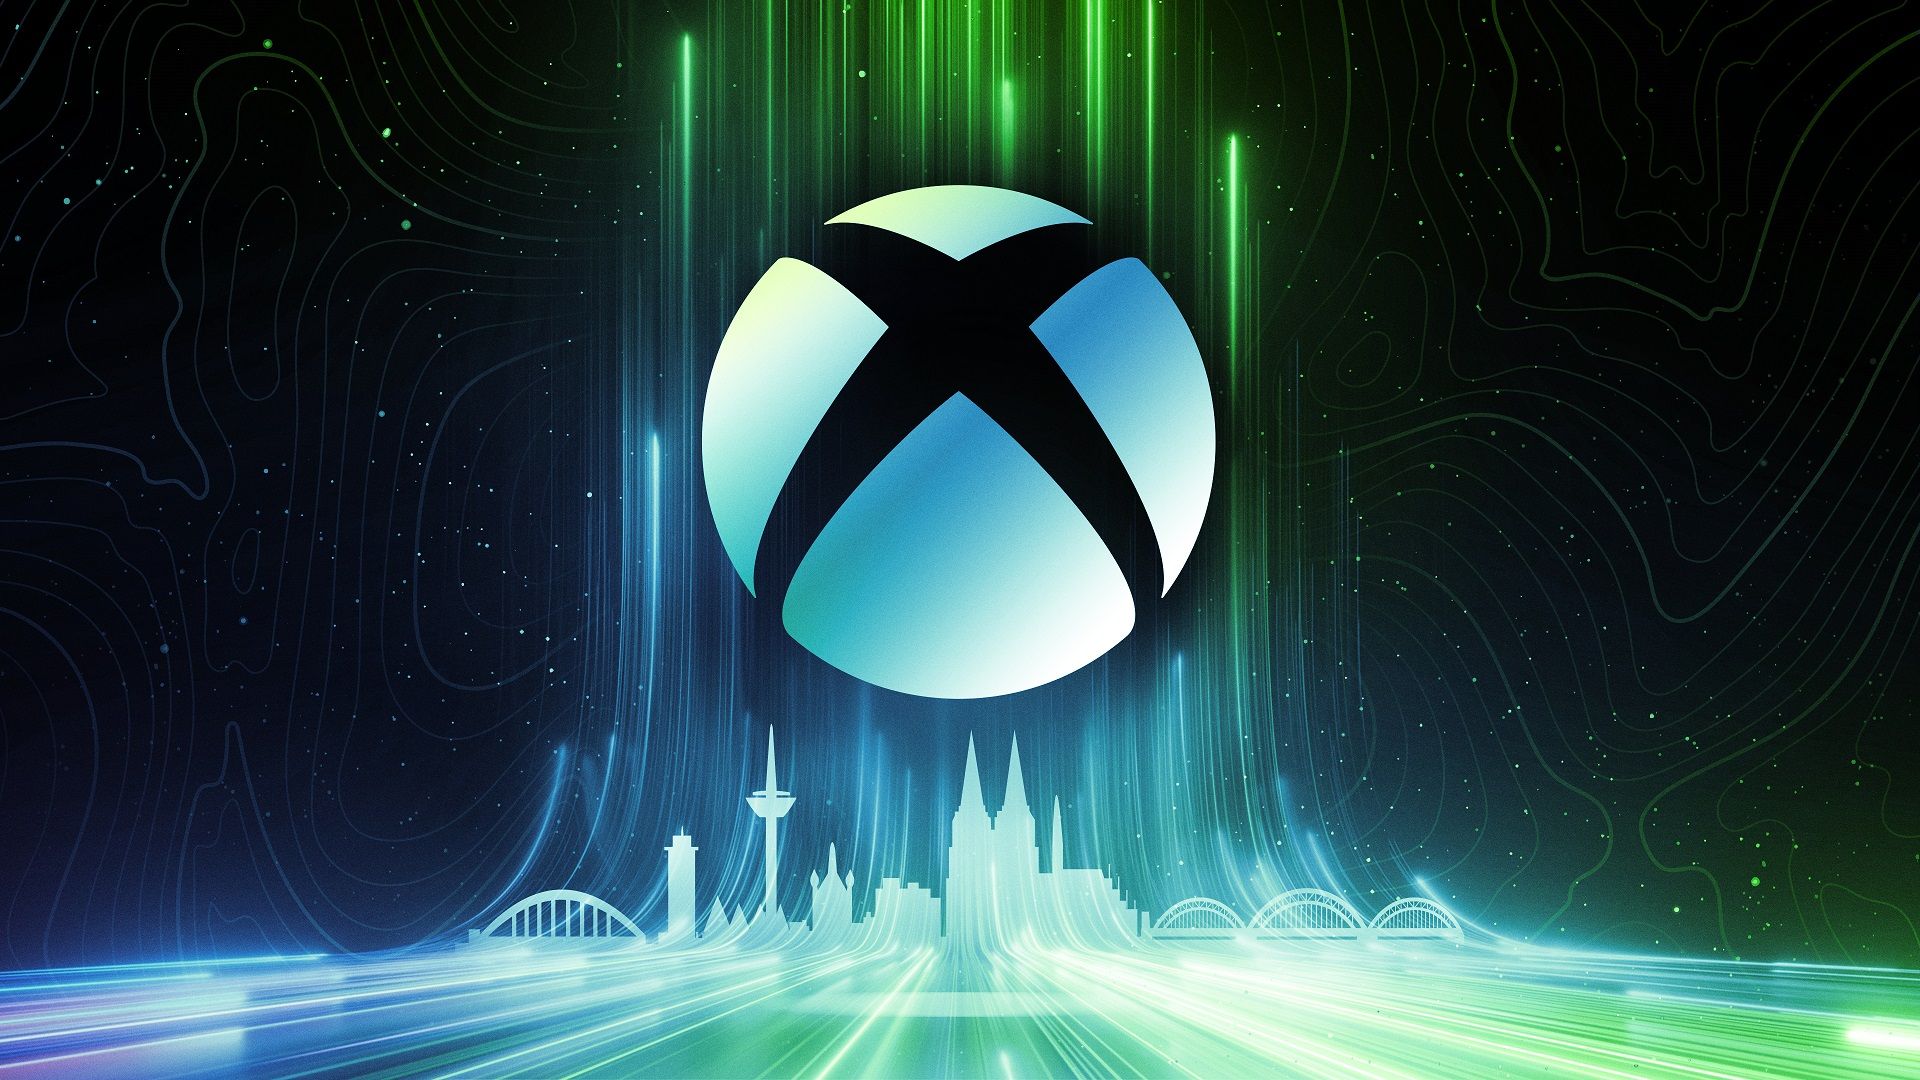 #Die nächste Xbox-Generation soll den bisher „größten technischen Sprung“ hinlegen